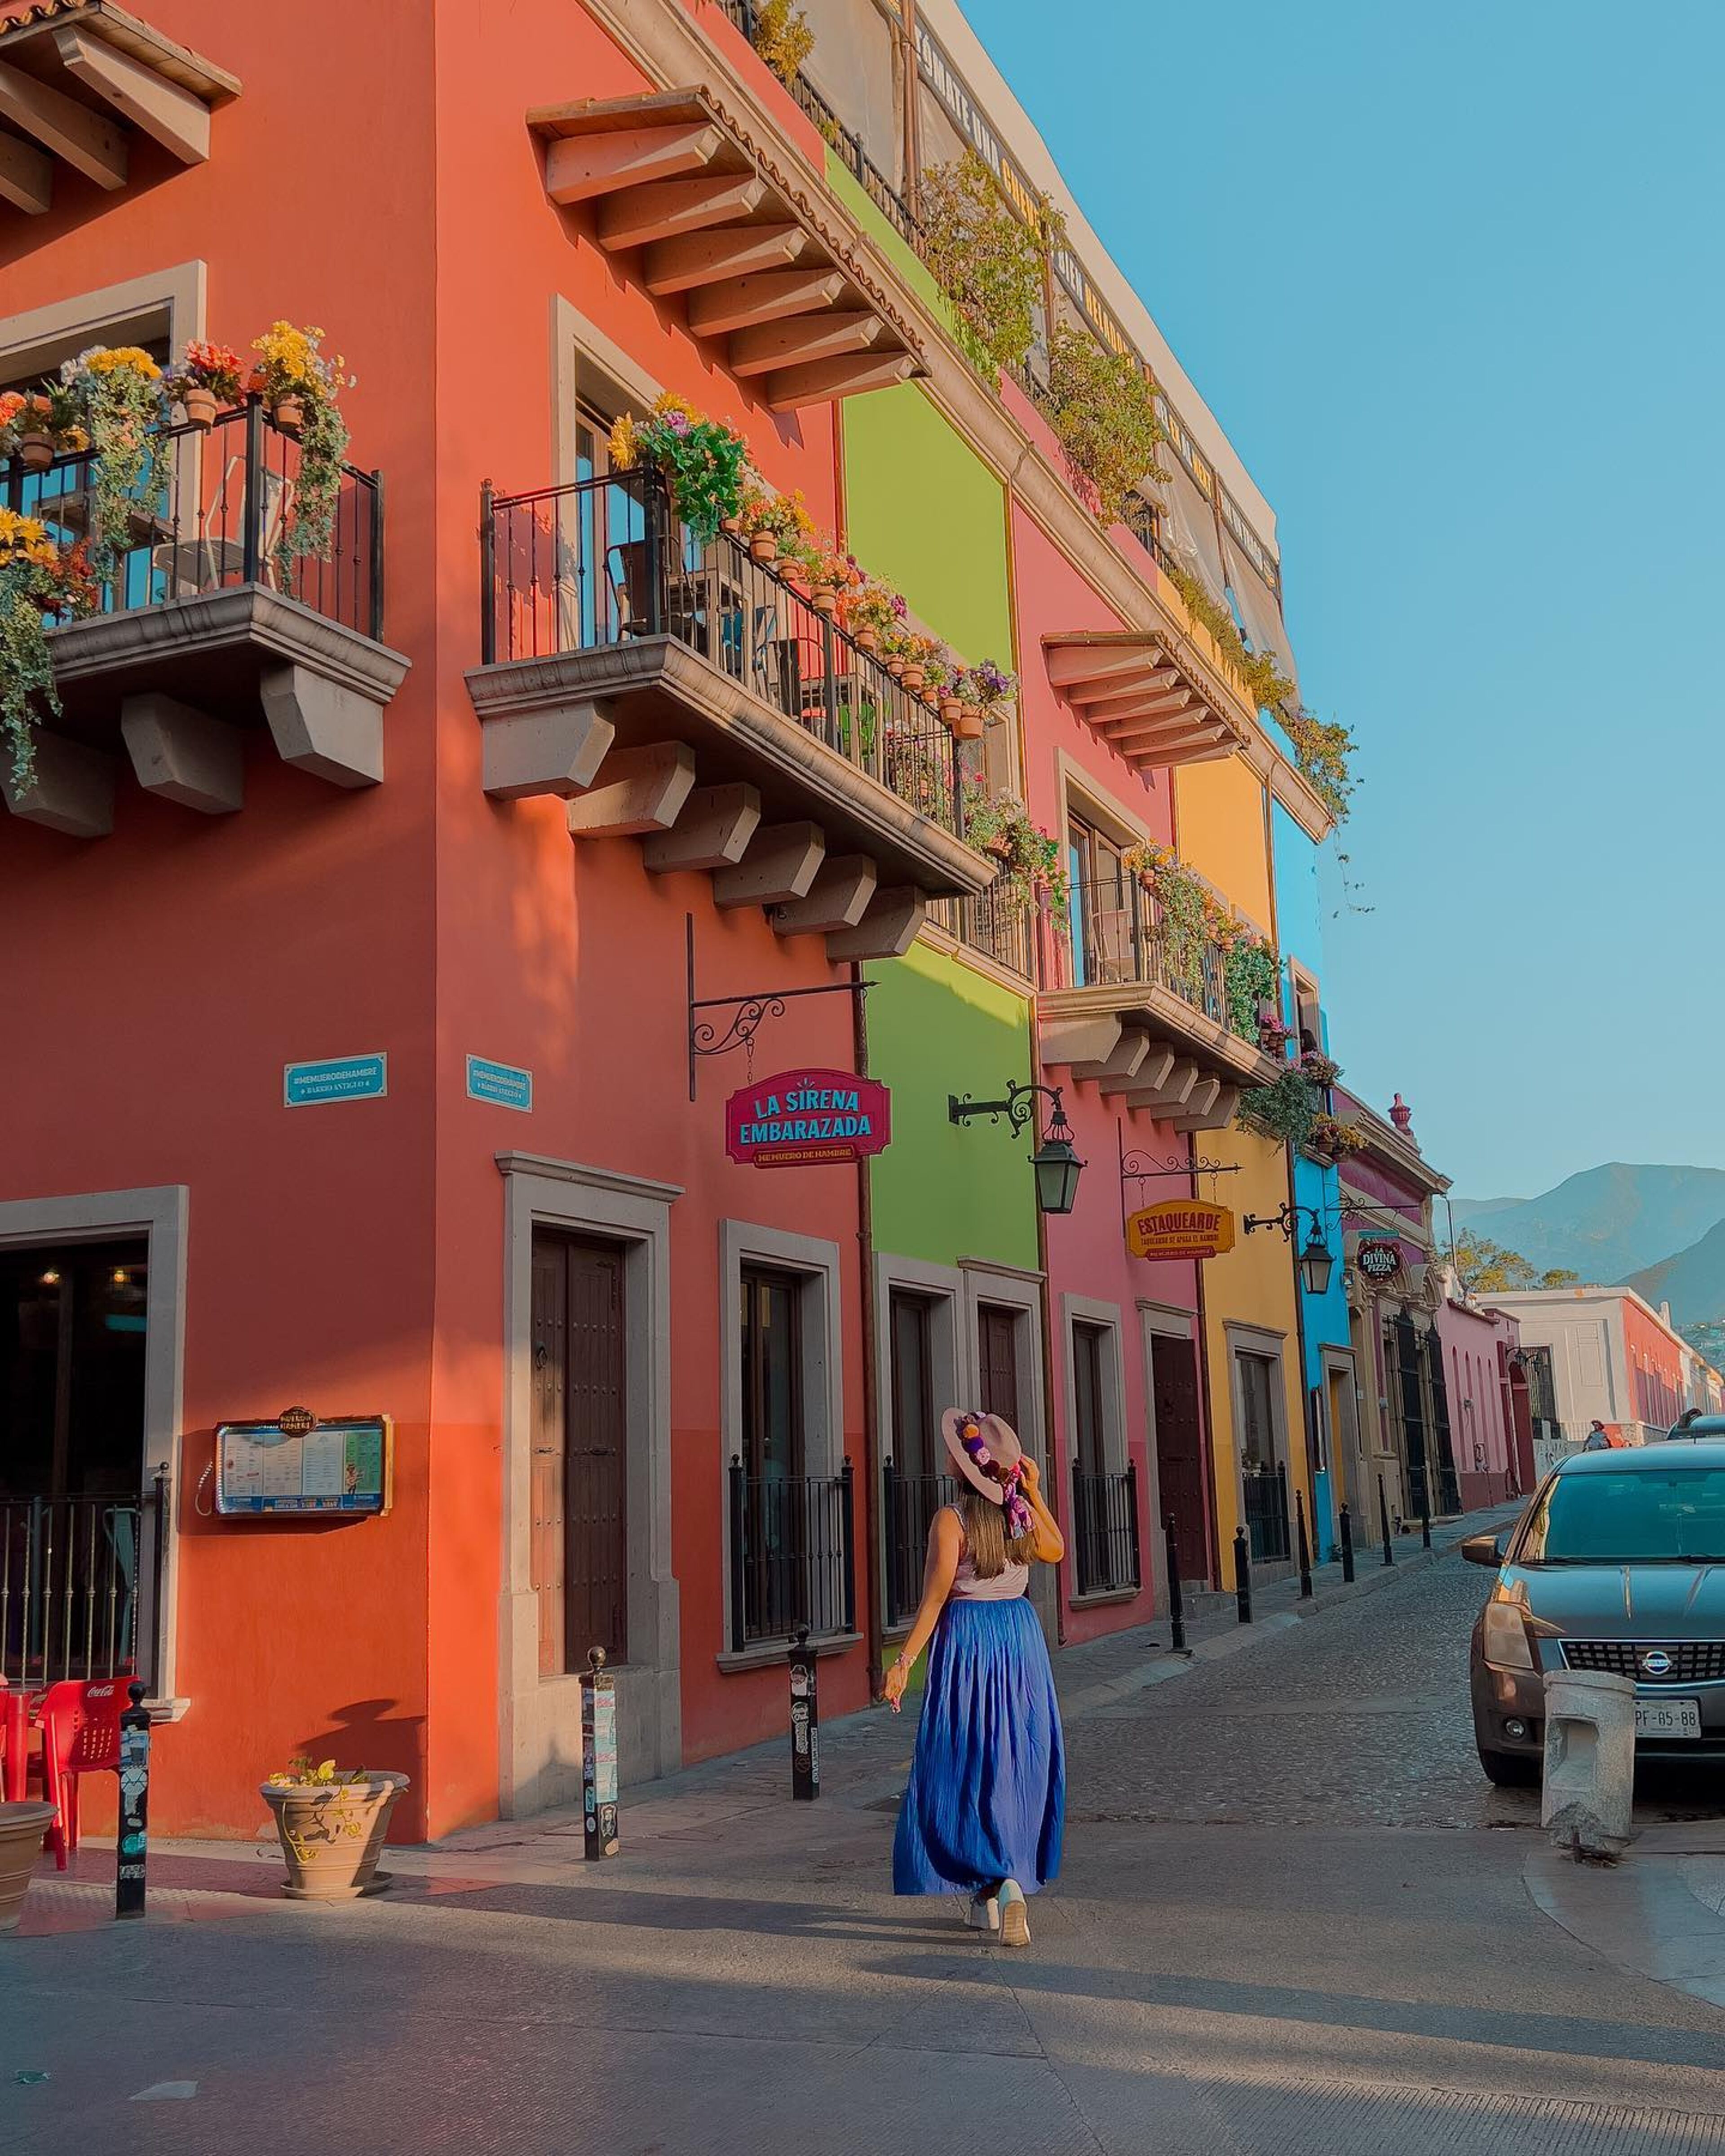 Une femme en jupe bleue et chapeau se promène dans une rue vivante bordée d'immeubles coloniaux sous la chaude lumière du soleil de fin d'après-midi.

